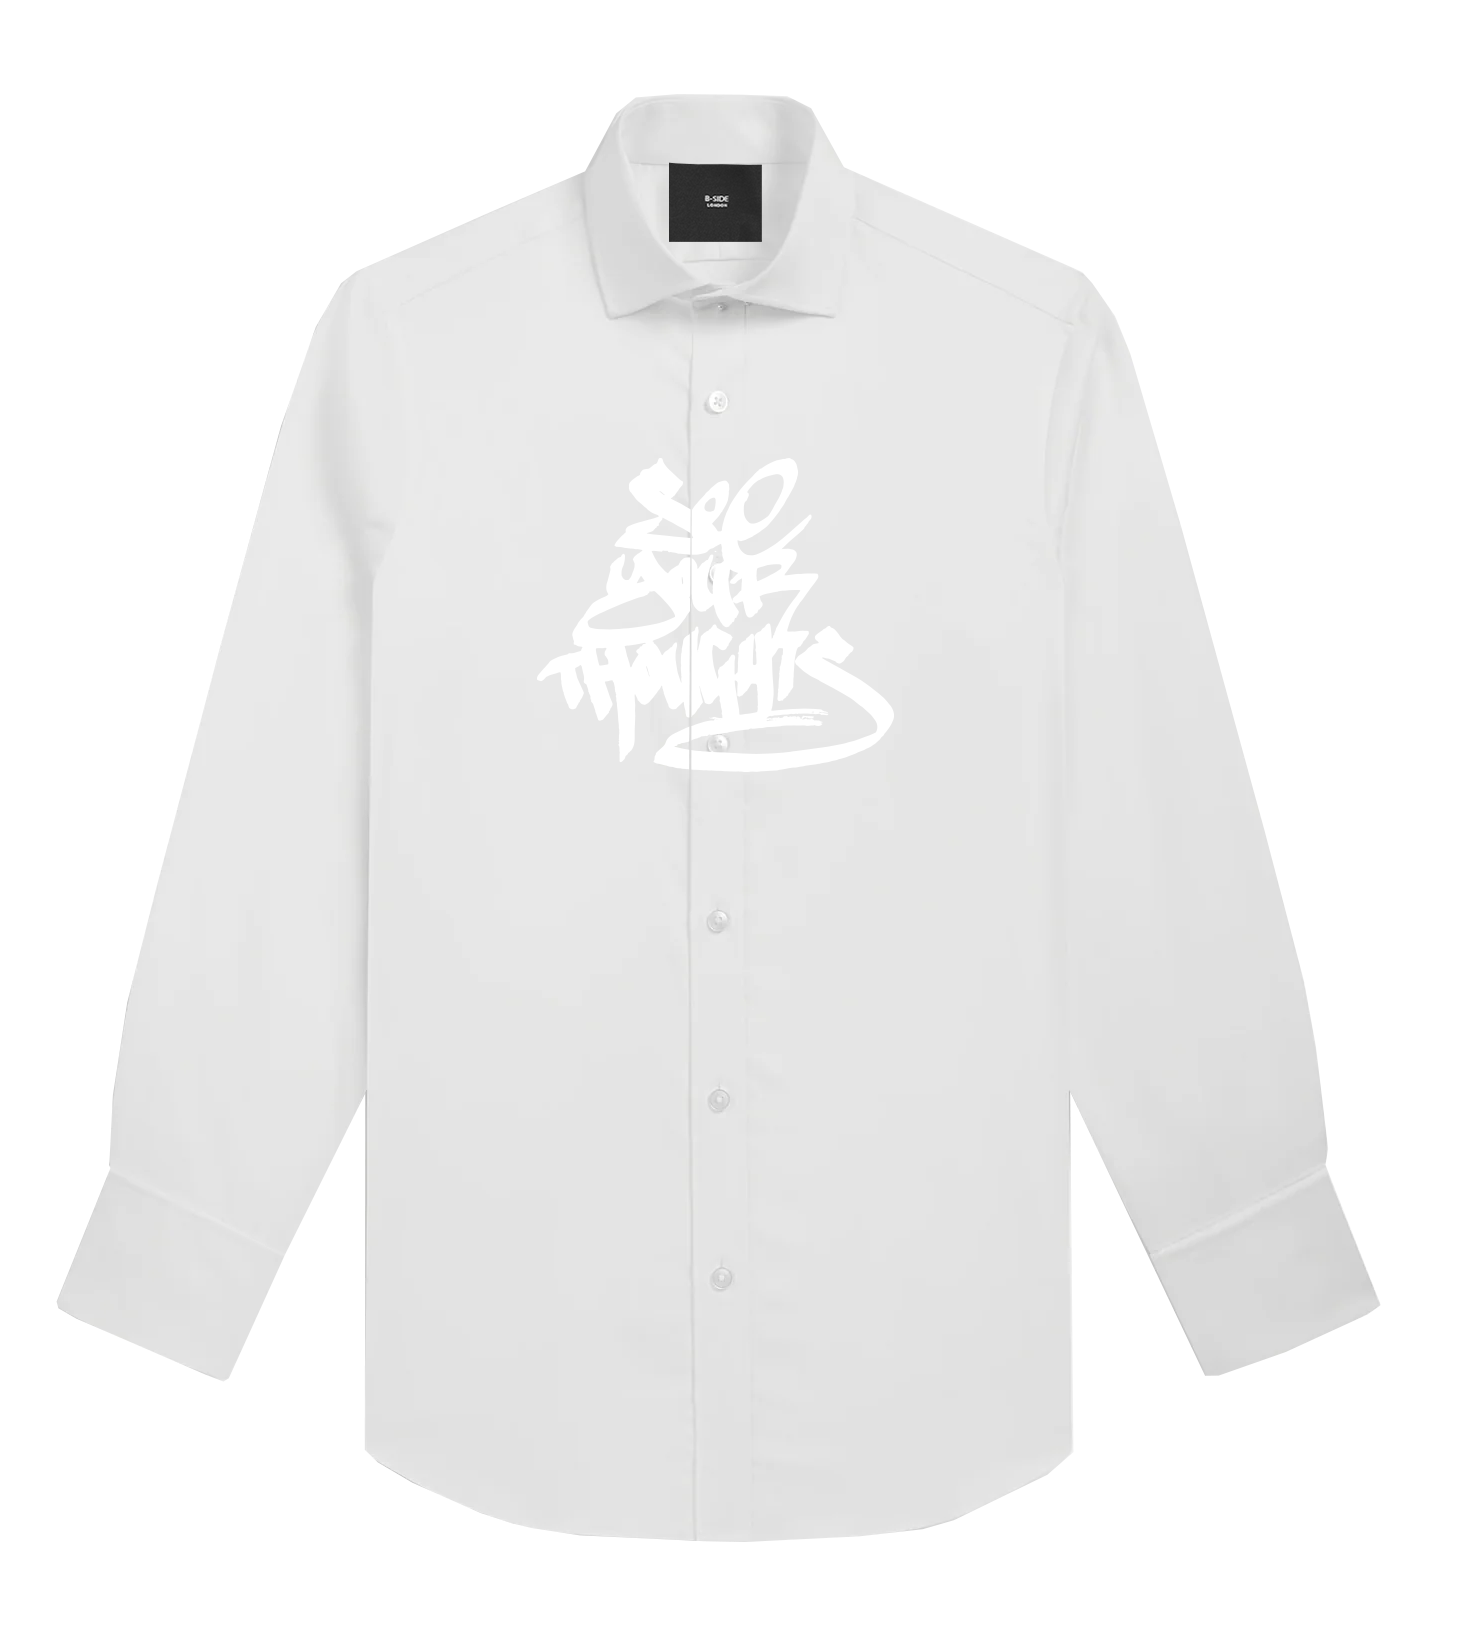 White Second Life Shirt Volume 1 - White Print